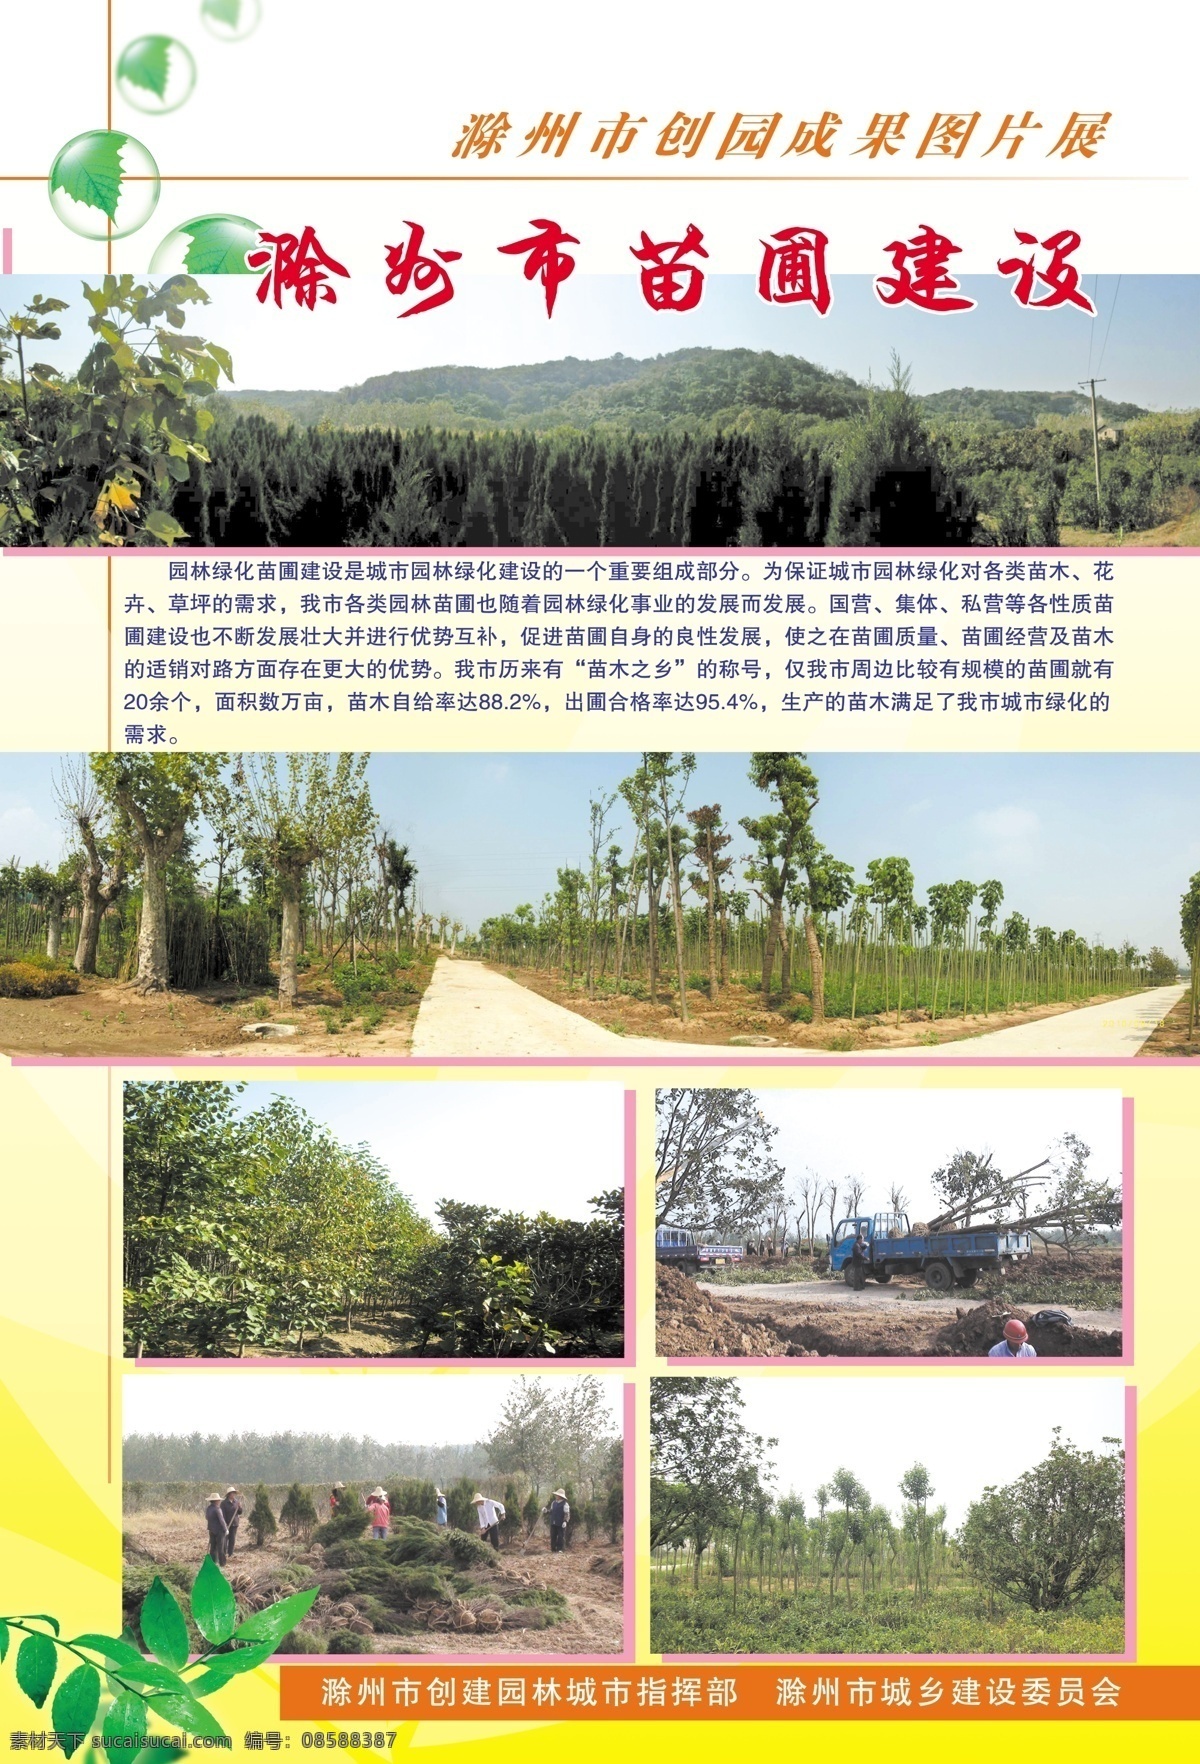 苗圃建设 苗圃 山林 树木 树叶 叶子 滁州园林城市 创建园林城市 照片展 图片展 成果展 展板模板 广告设计模板 源文件